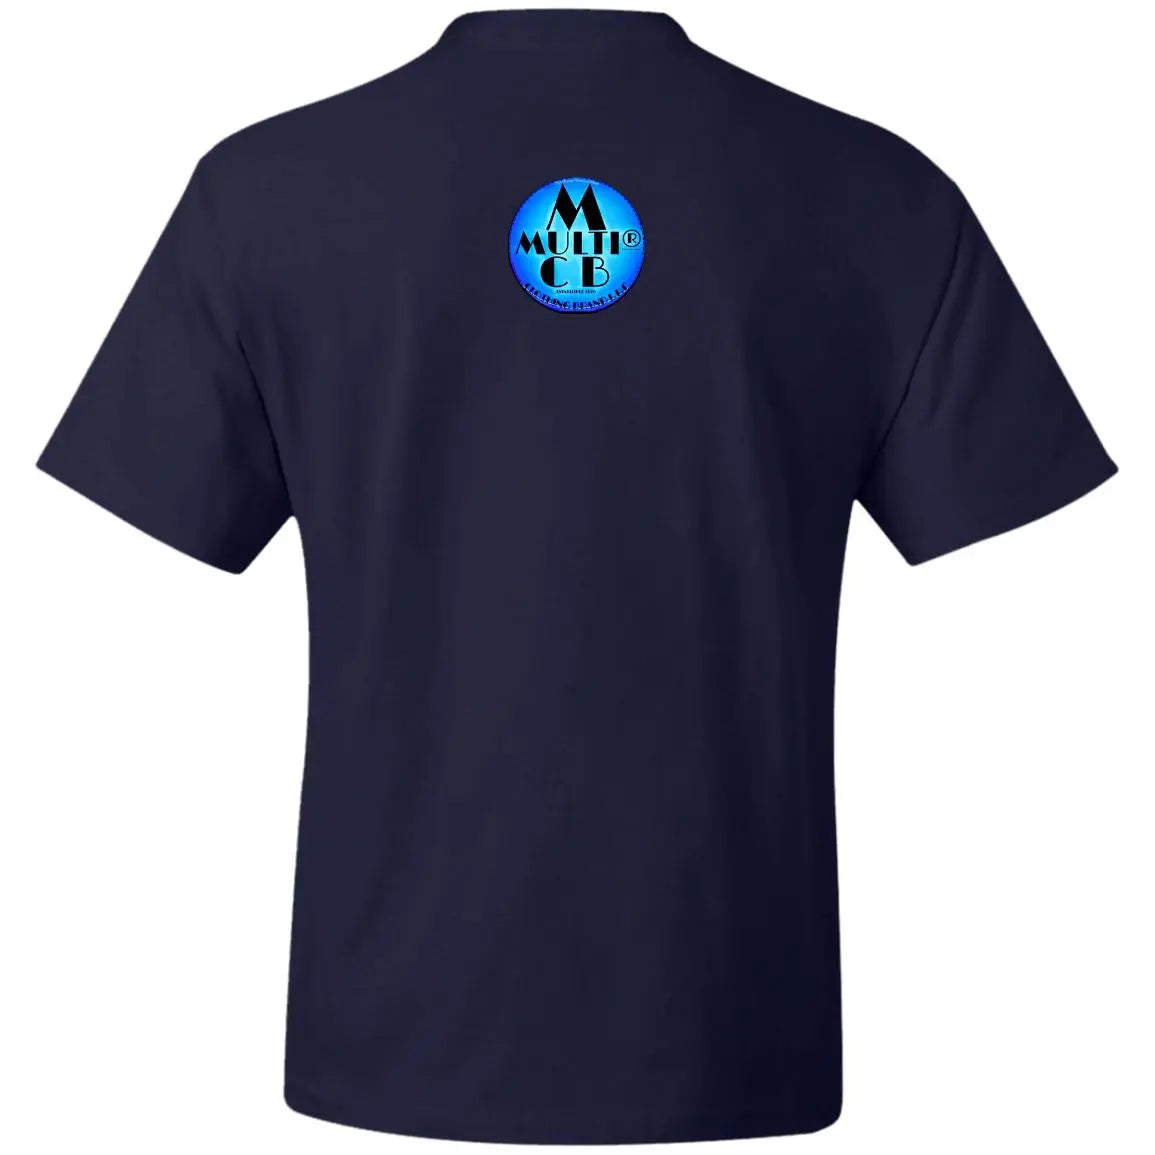 Flame From Flicker - Men's Beefy T-Shirt CustomCat